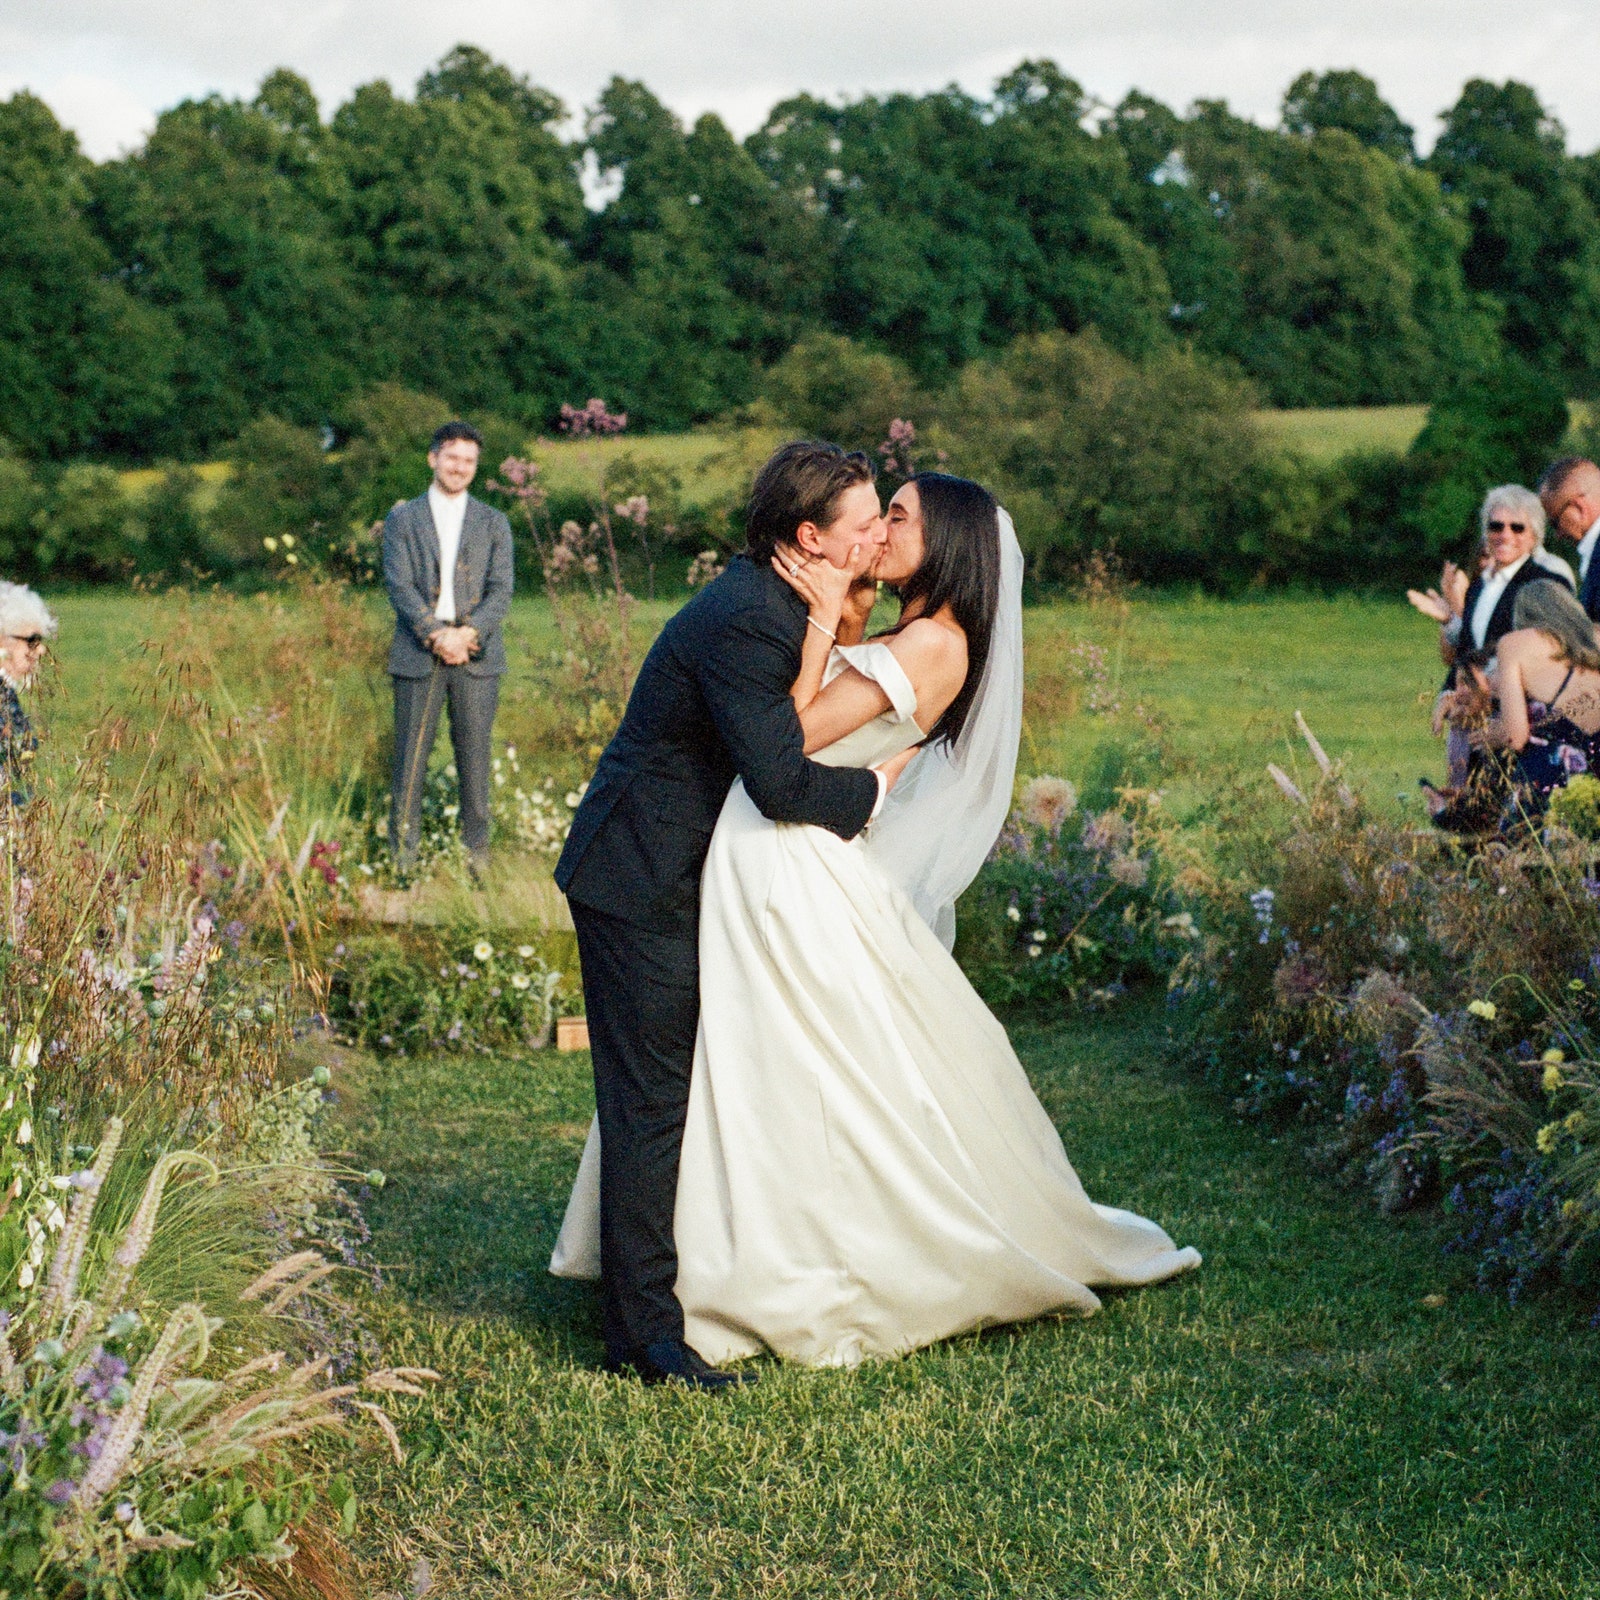 Il matrimonio bucolico di Jesse Light e Jesse Bongiovi nella campagna inglese. Per La sposa 3 abiti Vivienne Westwood